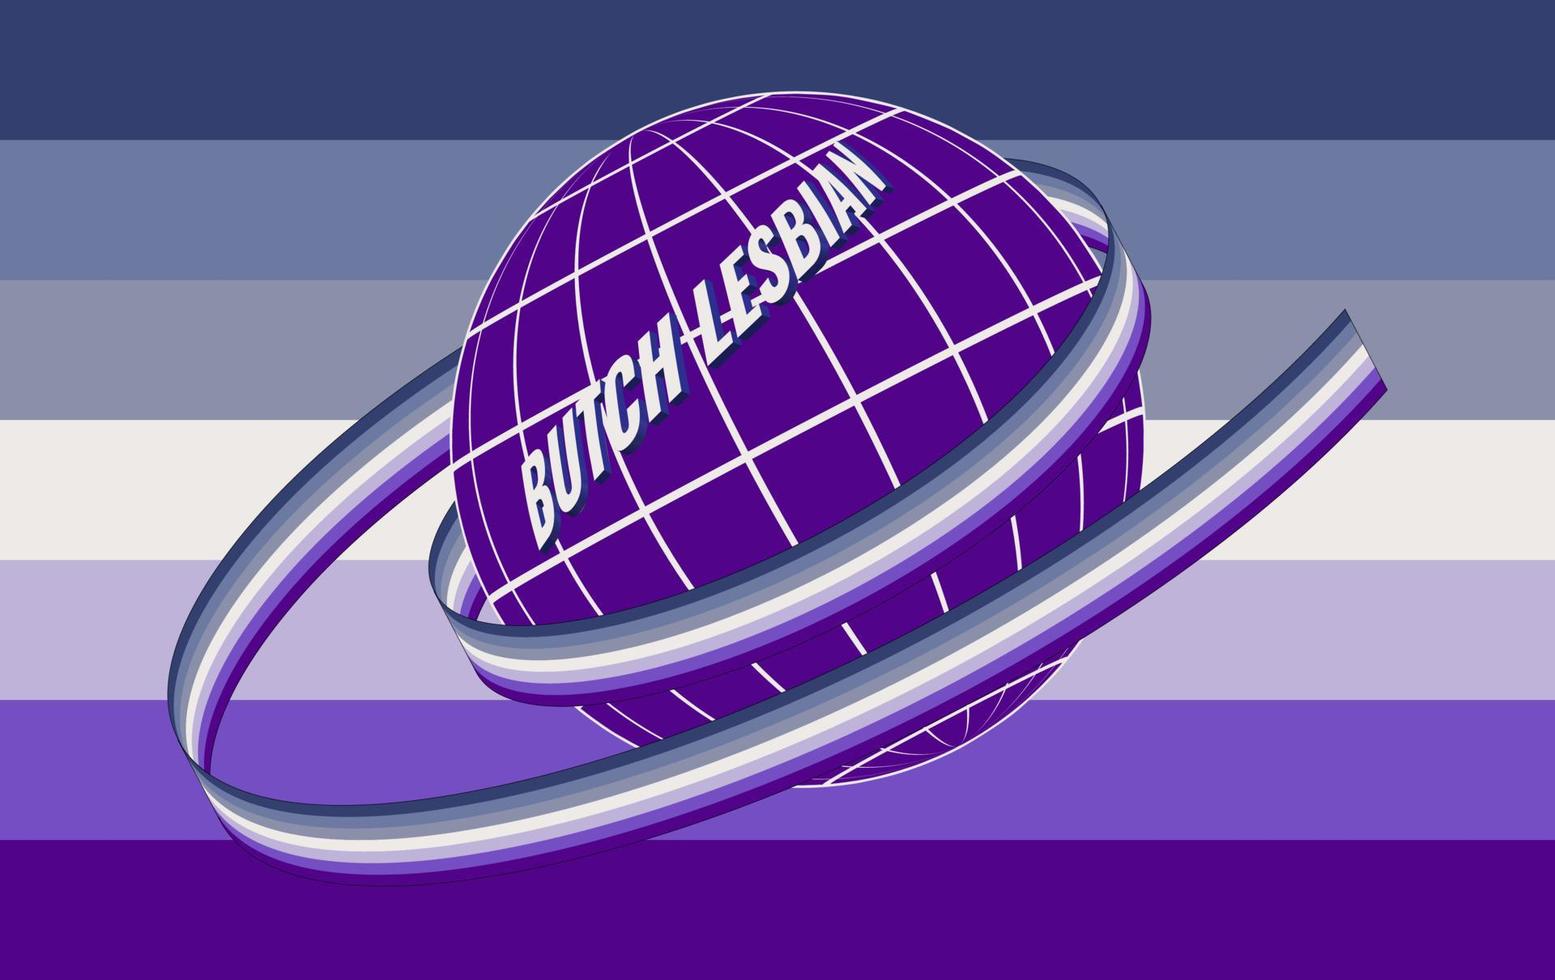 slakt lesbisk subkultur symbol. vektor illustration. de jord, målad i de färger av de flagga, är insvept i en band med de officiell flagga av de HBTQ gemenskap.